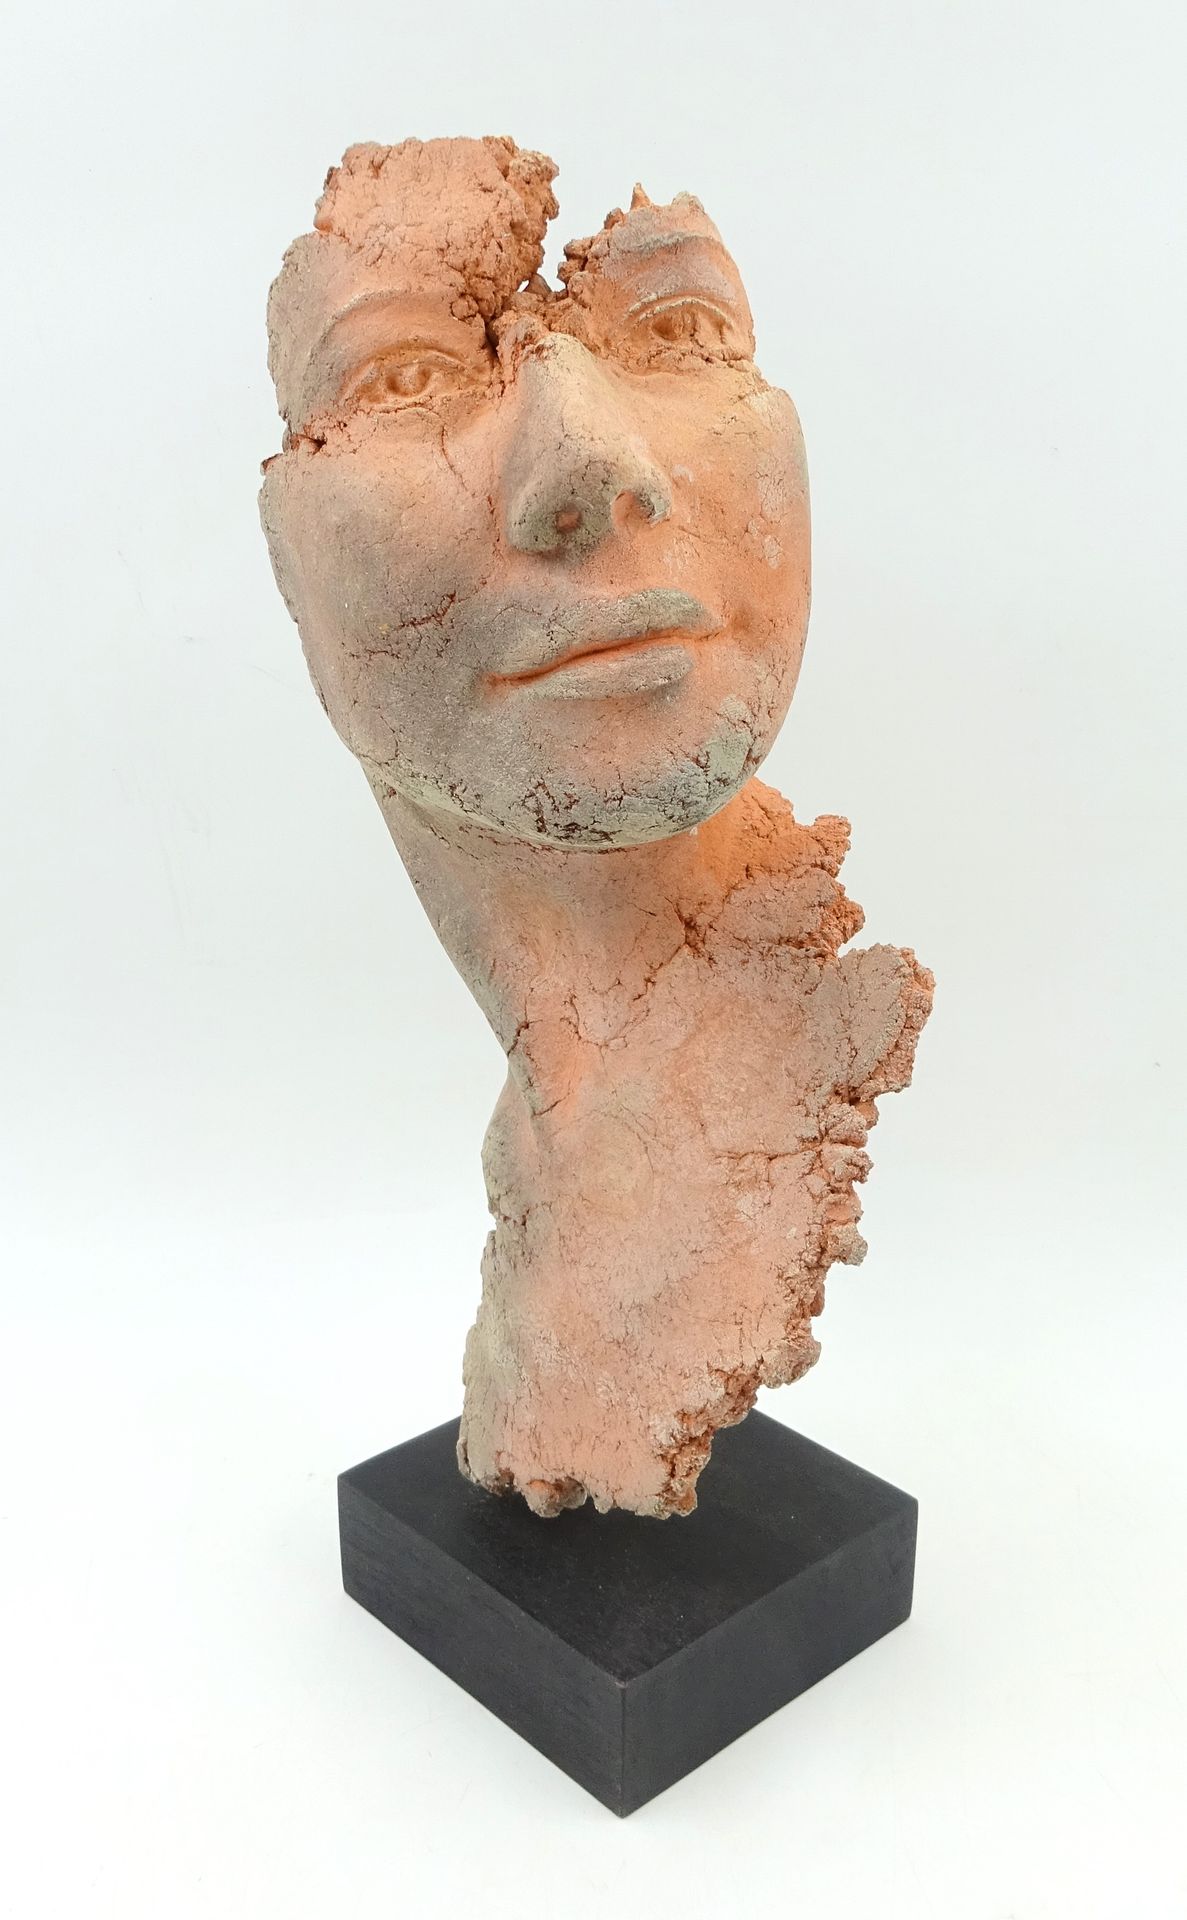 Null 菲利普-莫雷尔（生于 1948 年），作品出自他之手。半身像和脸部向右转。陶土雕塑，黑漆木质底座。高：36 厘米（含底座）。